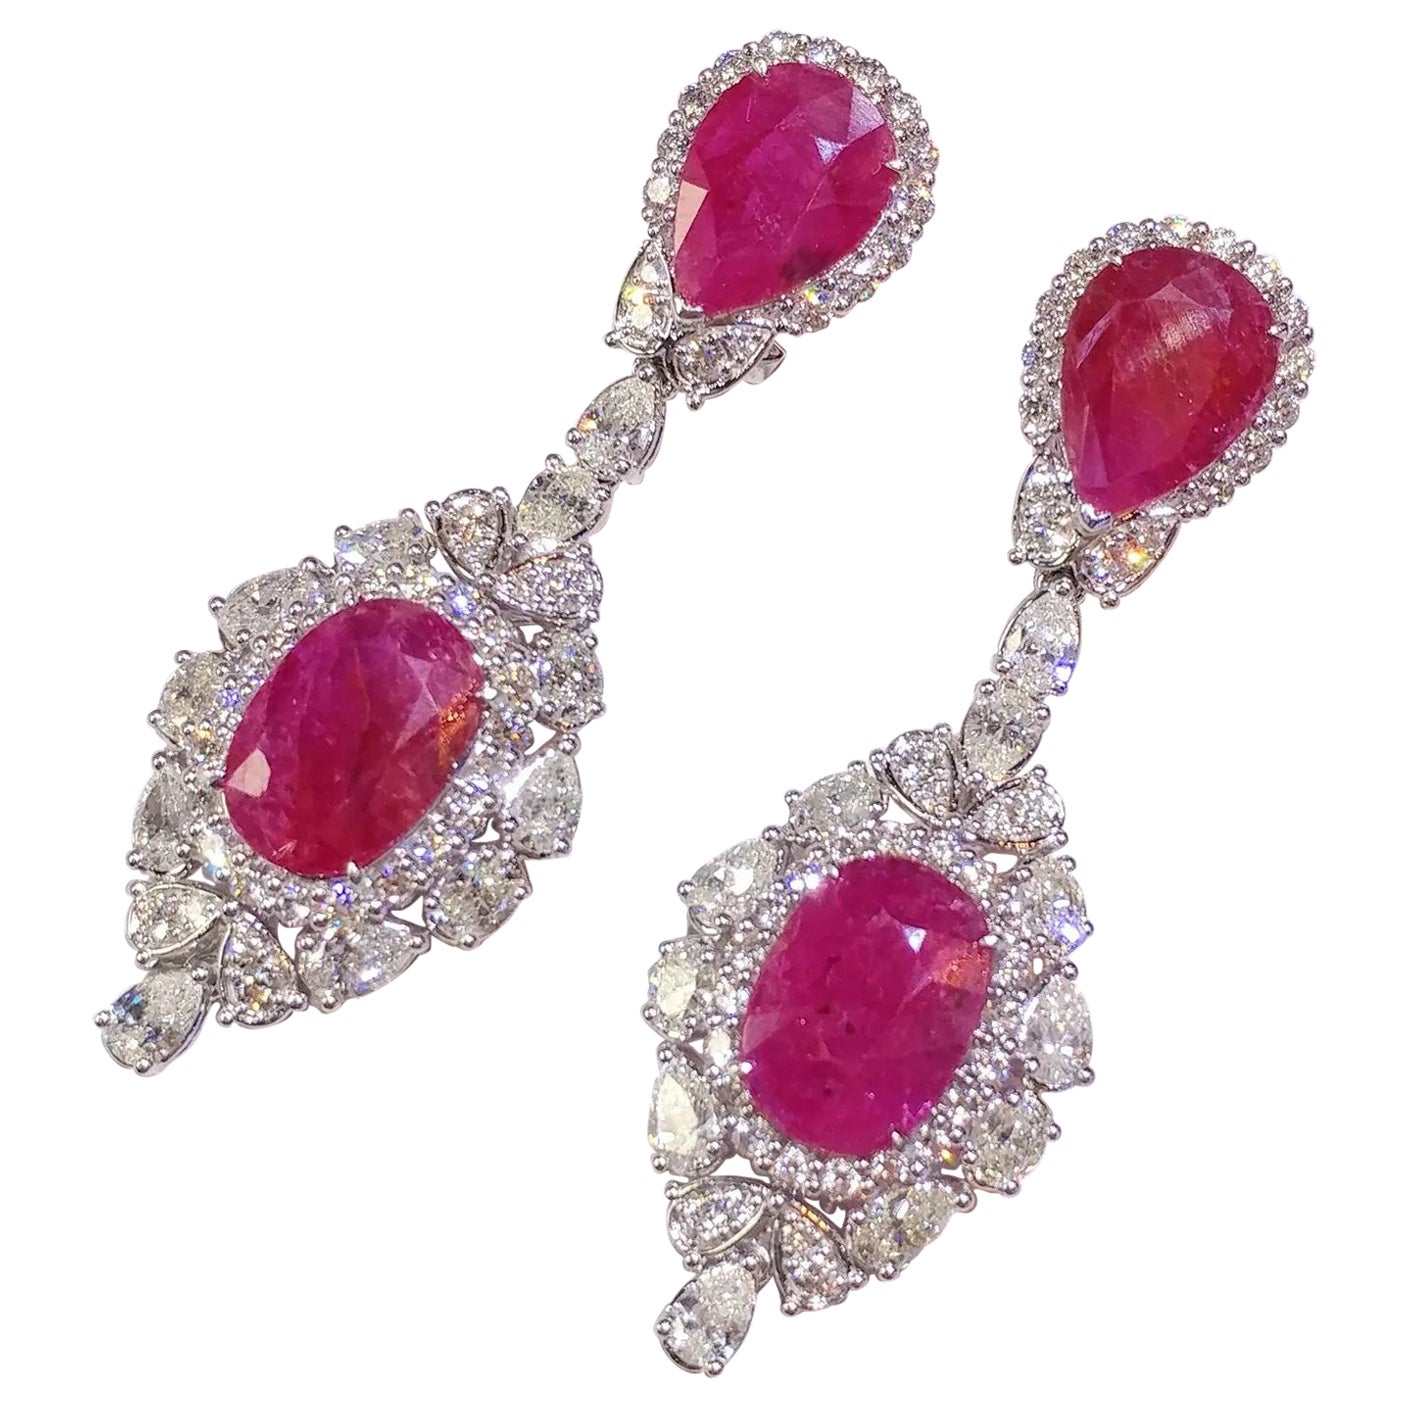 IGI Certified 16.74 Carat Ruby & 6.86 Carat Diamond Earrings in 18K White Gold For Sale